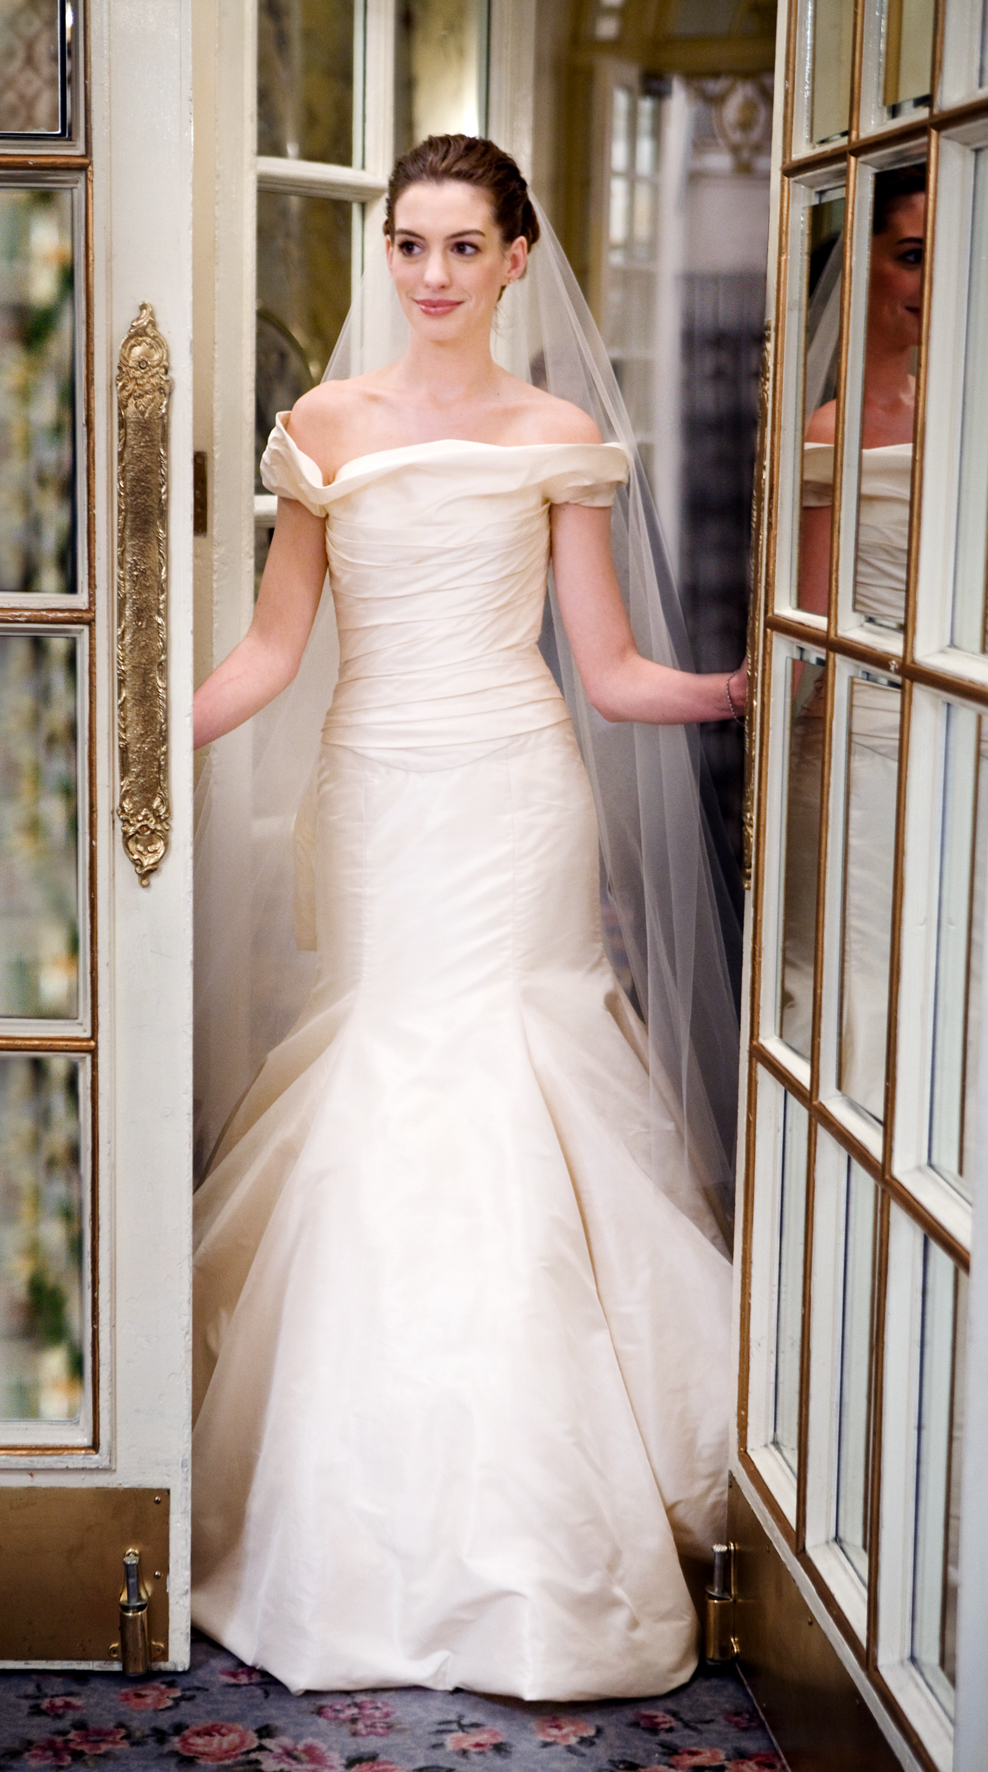 Anne Hathaway Wedding Dress In Bride Wars